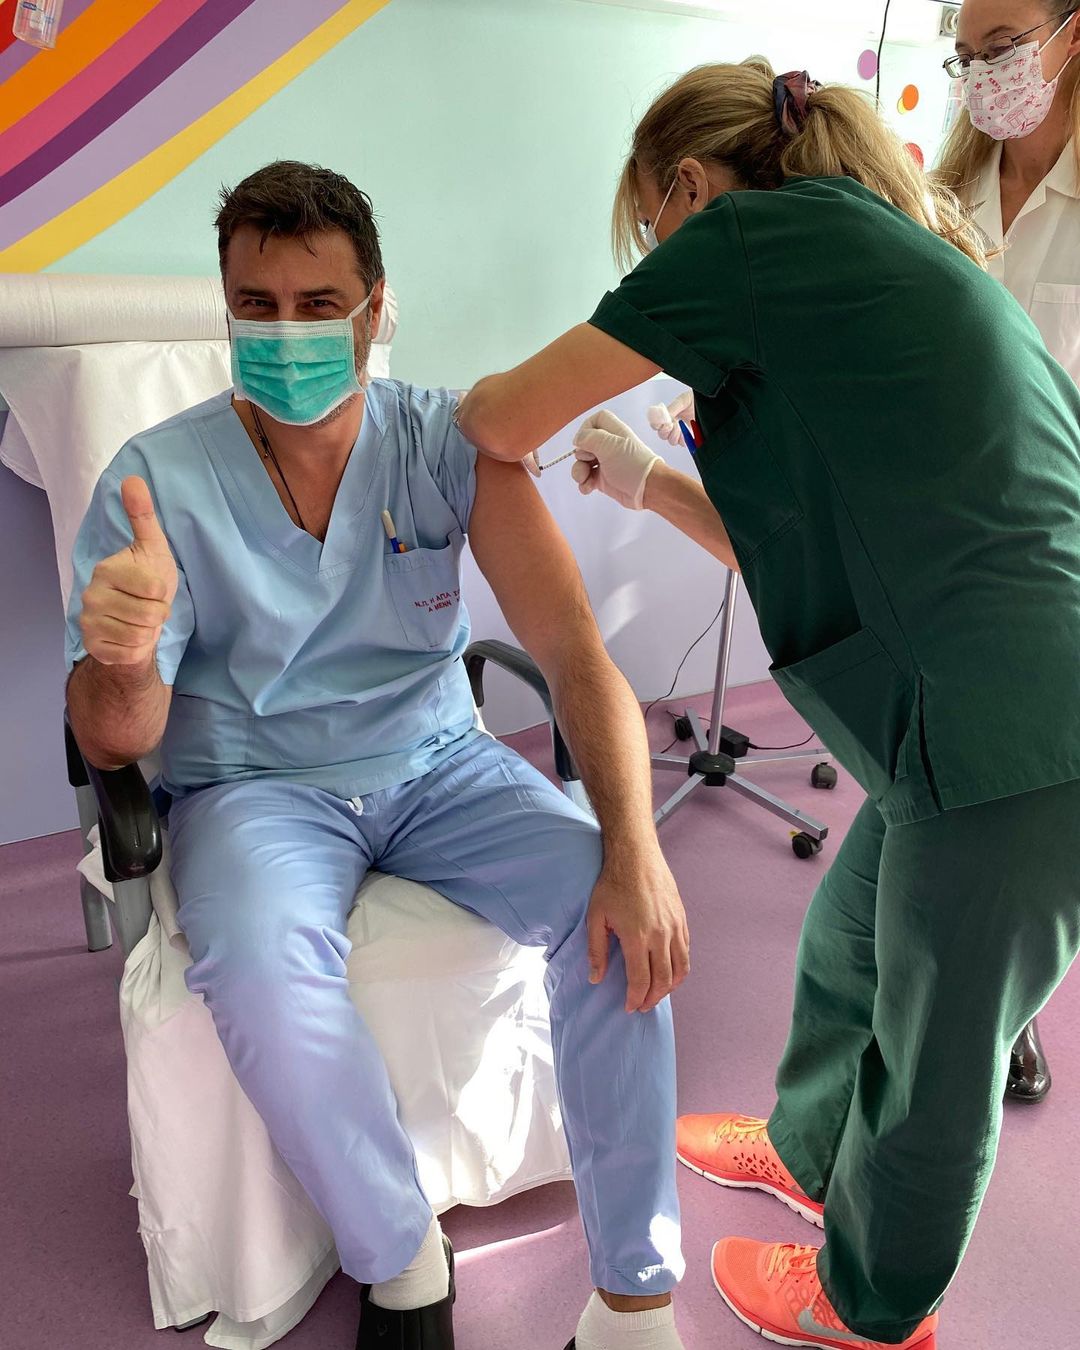 Βασίλης Παλαιολόγος: O ηθοποιός – νοσηλευτής έκανε το εμβόλιο του κορονοϊού και στέλνει το δικό του μήνυμα